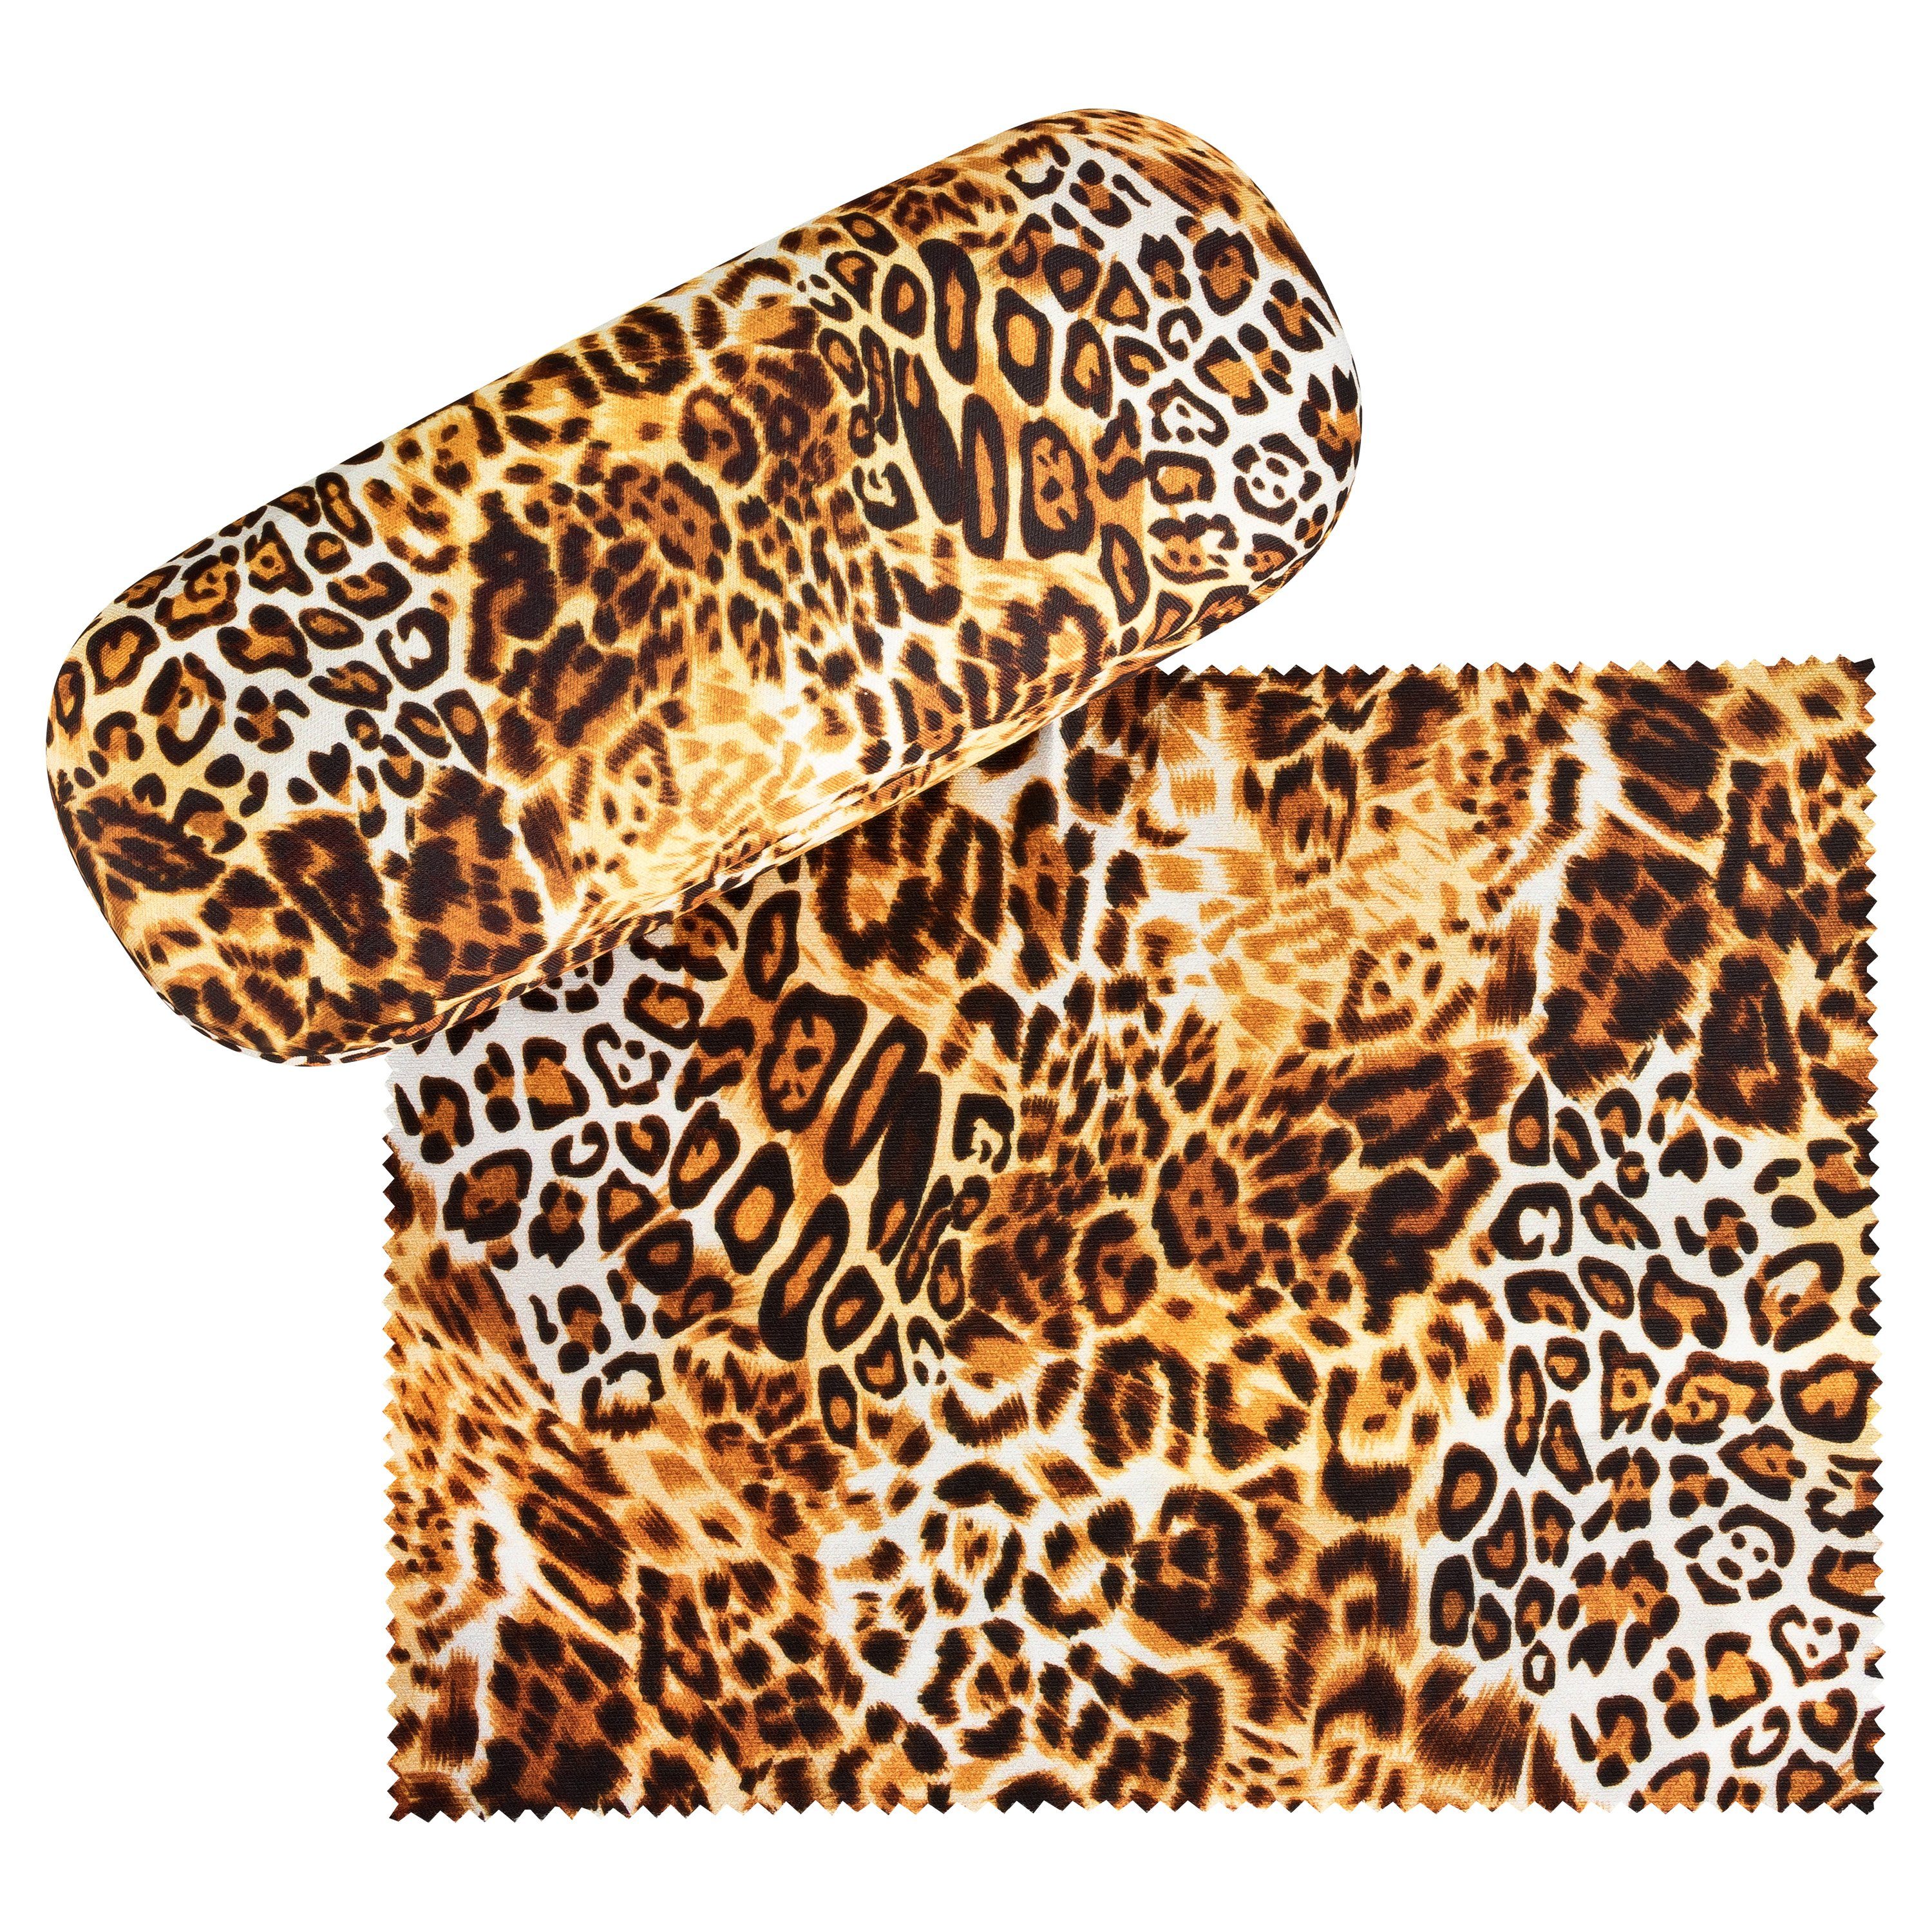 von Lilienfeld Brillenetui Brillenetui Leopard Animalprint Raubkatze Brillenbox, stabiles mit Mikrofaser bezogenes Hardcase